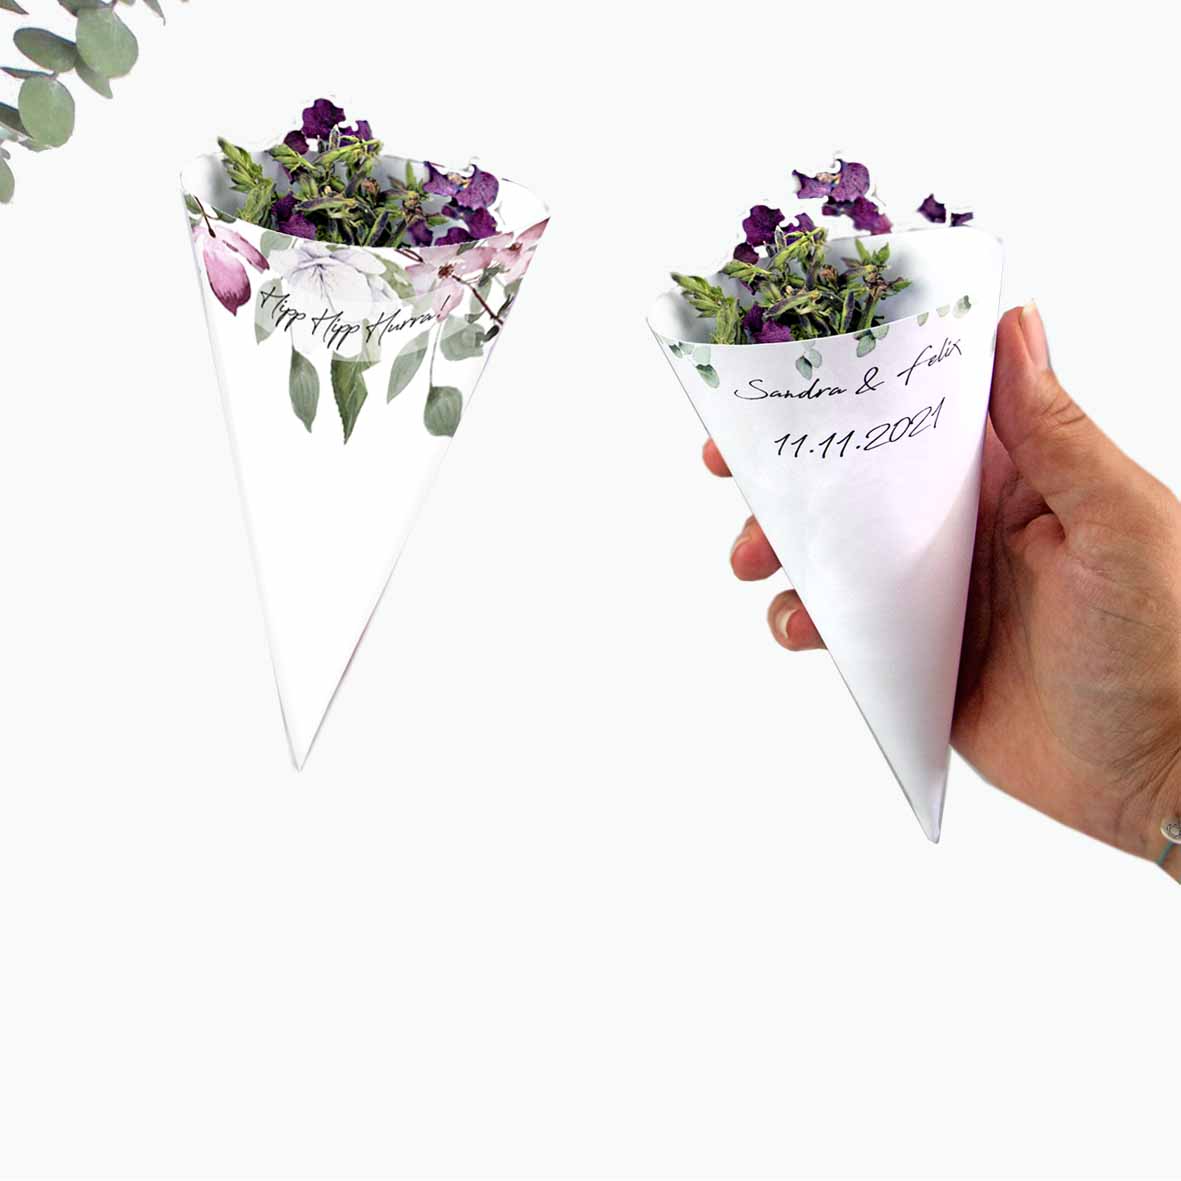 Druckvorlagen für individuelle Spitztüten für Blumen, Reis oder Konfetti